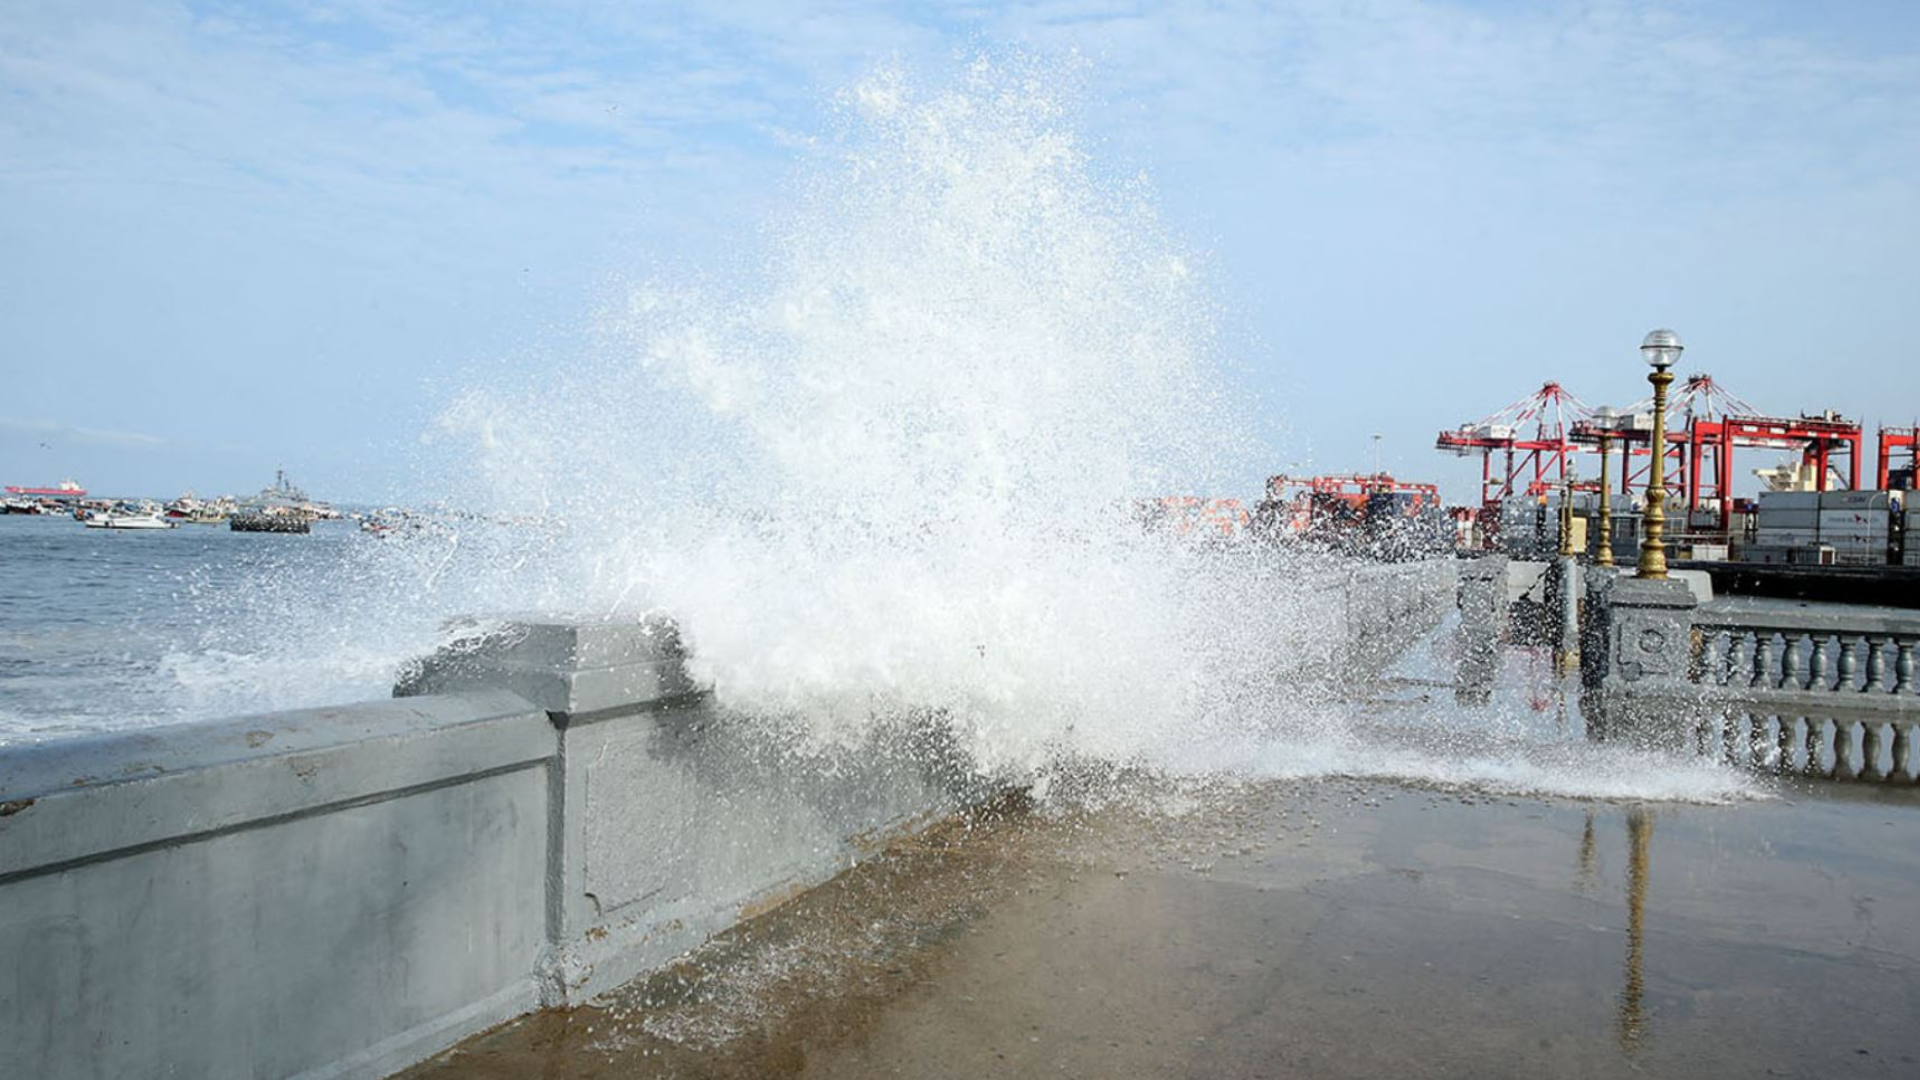 Alerta en la costa: Fuertes oleajes continúan azotando las playas y poniendo en riesgo negocios y embarcaciones